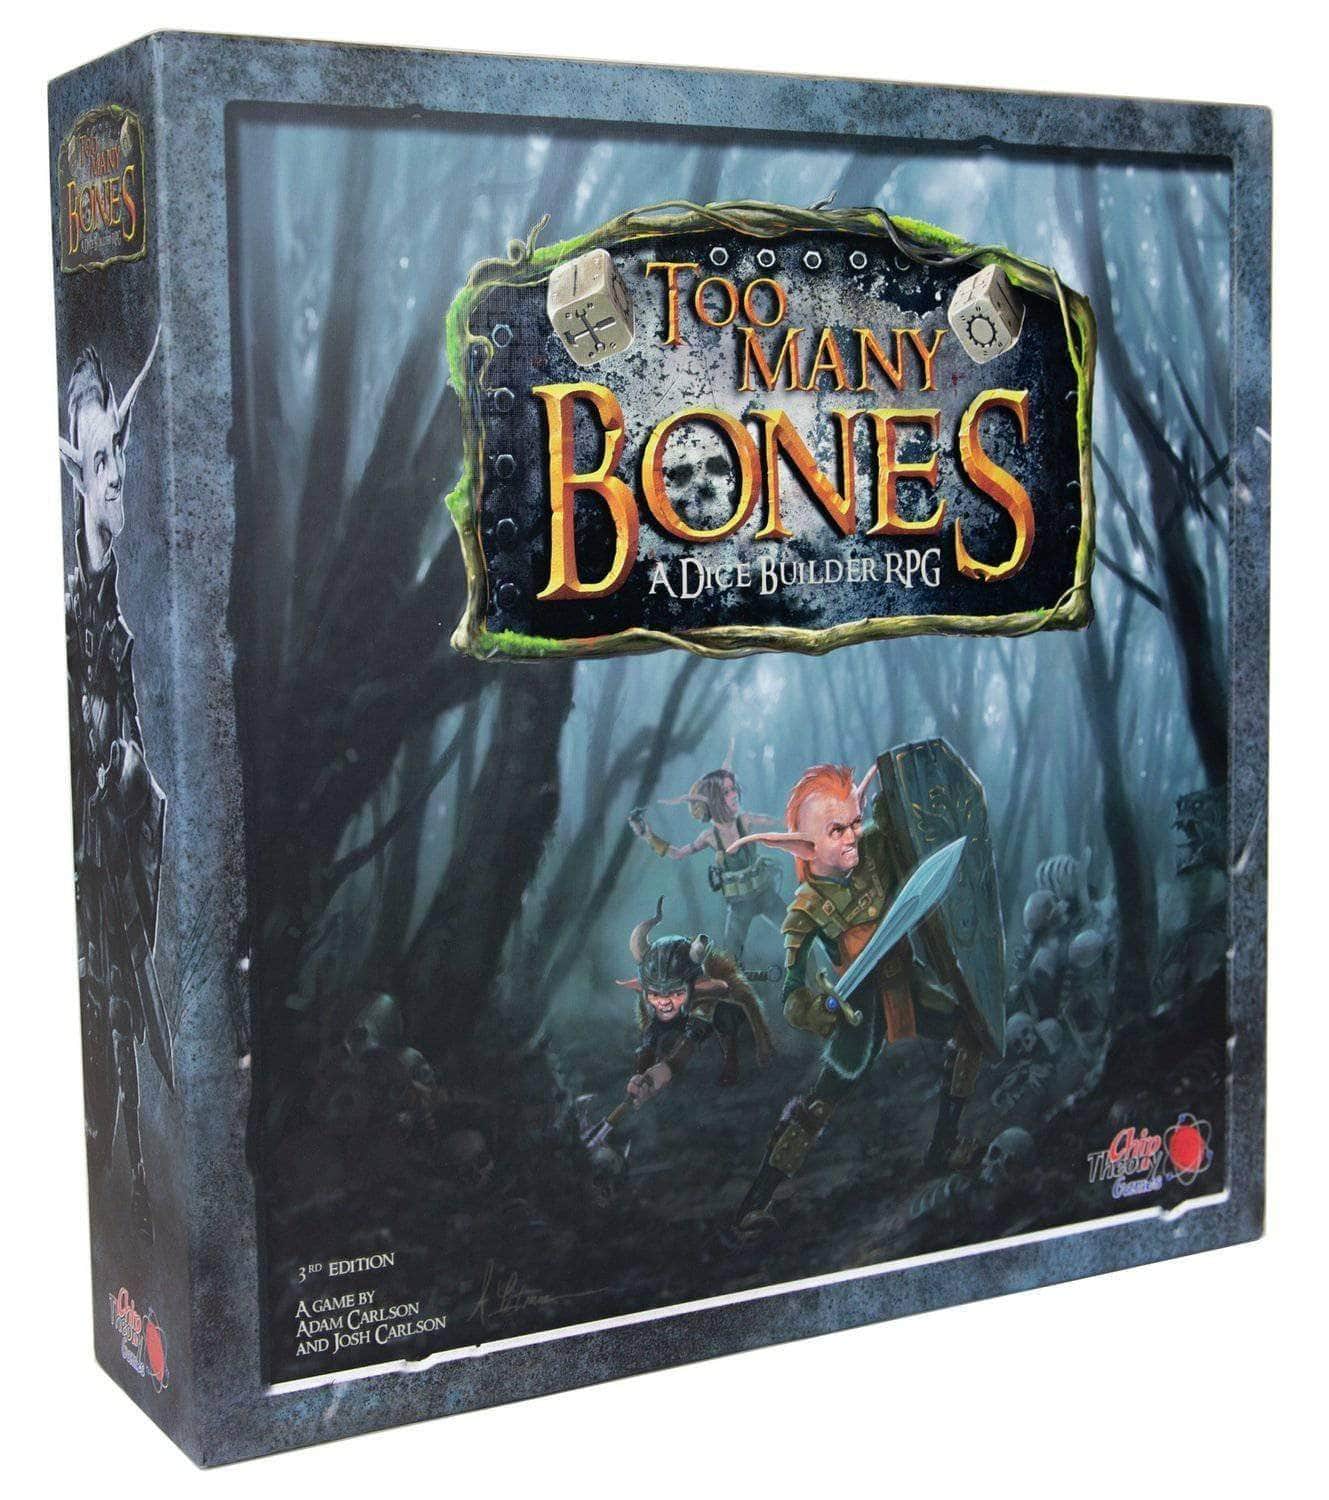 Muitos ossos: Core Game Ding & Dent (Retail Edition) Game de tabuleiro de varejo Chip Theory Games 0704725644067 KS000143E